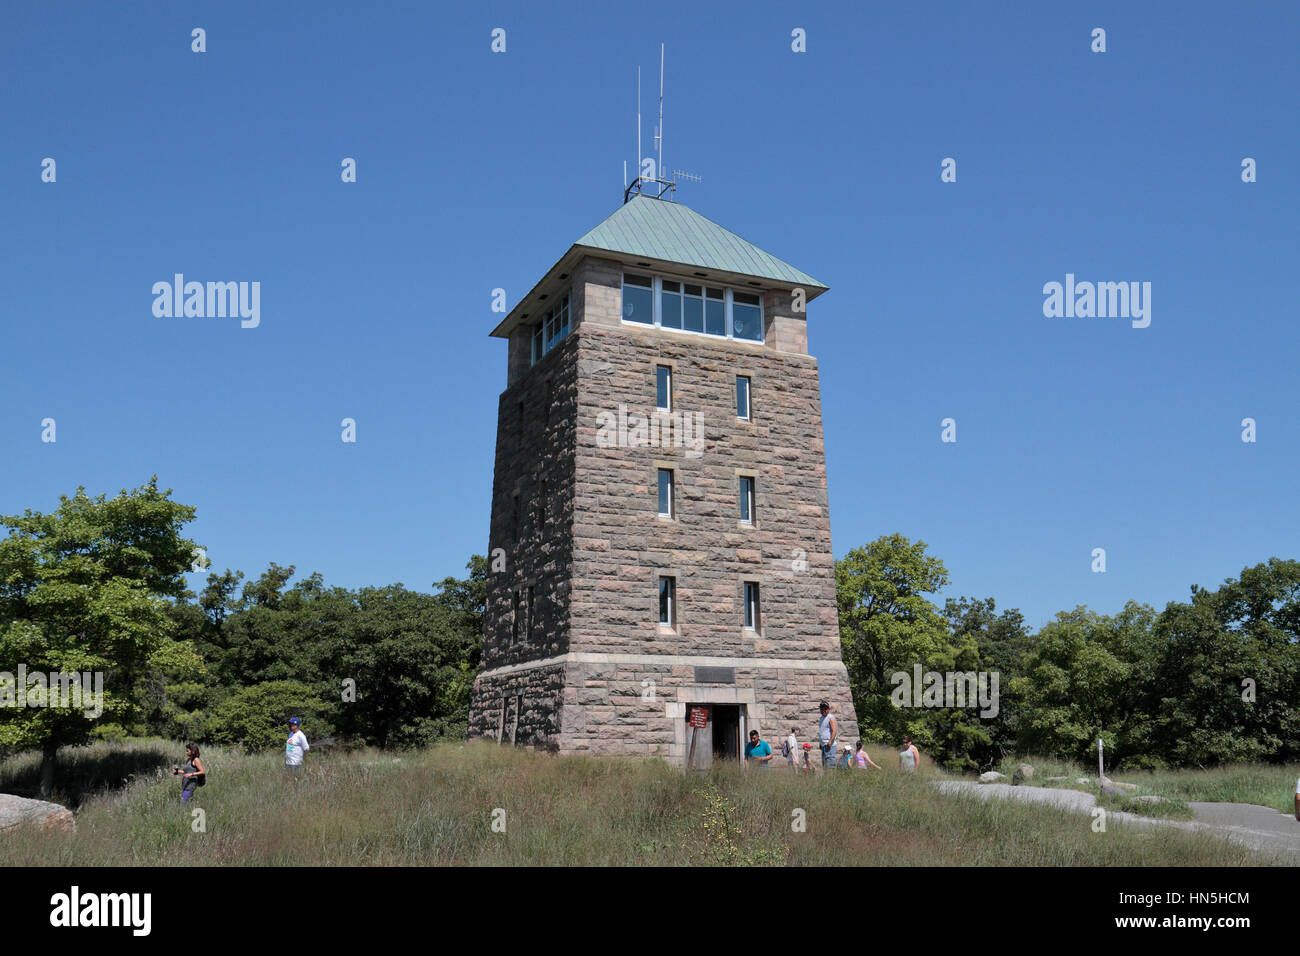 Les moteurs Perkins Memorial Tower, parc d'état de Bear Mountain, Rockland County, New York, United States. Banque D'Images